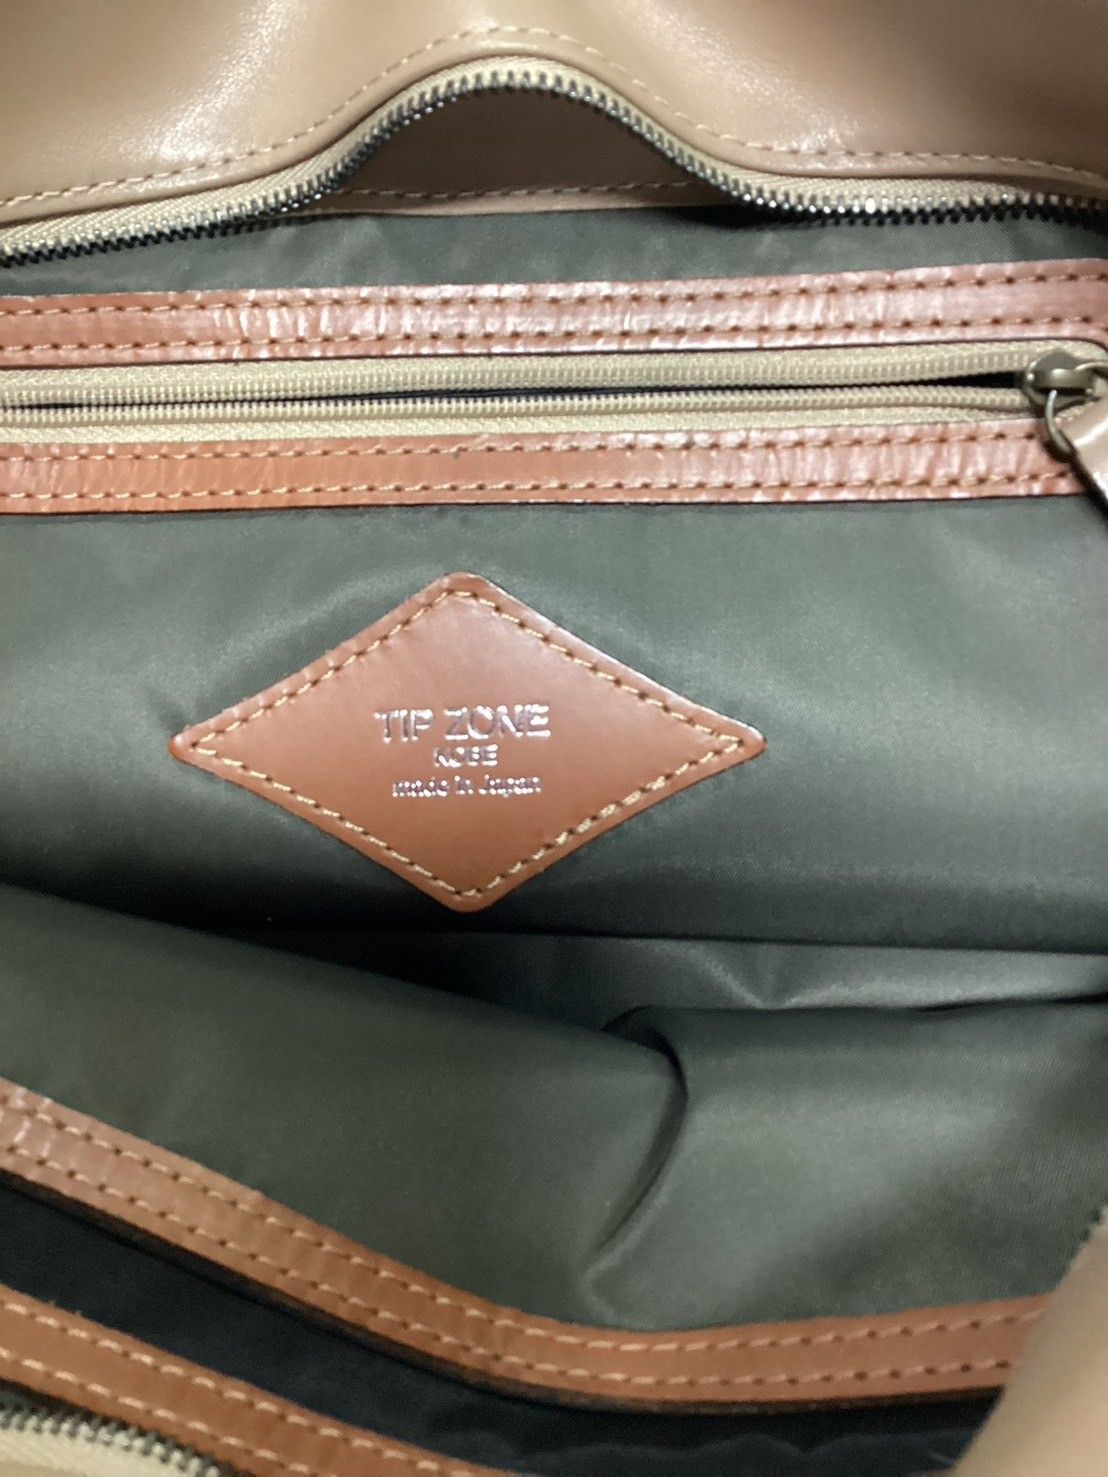 11,264円ティップゾーン 神戸 ハンドバッグ レザー バイカラー 日本製 保存袋 ブラウン